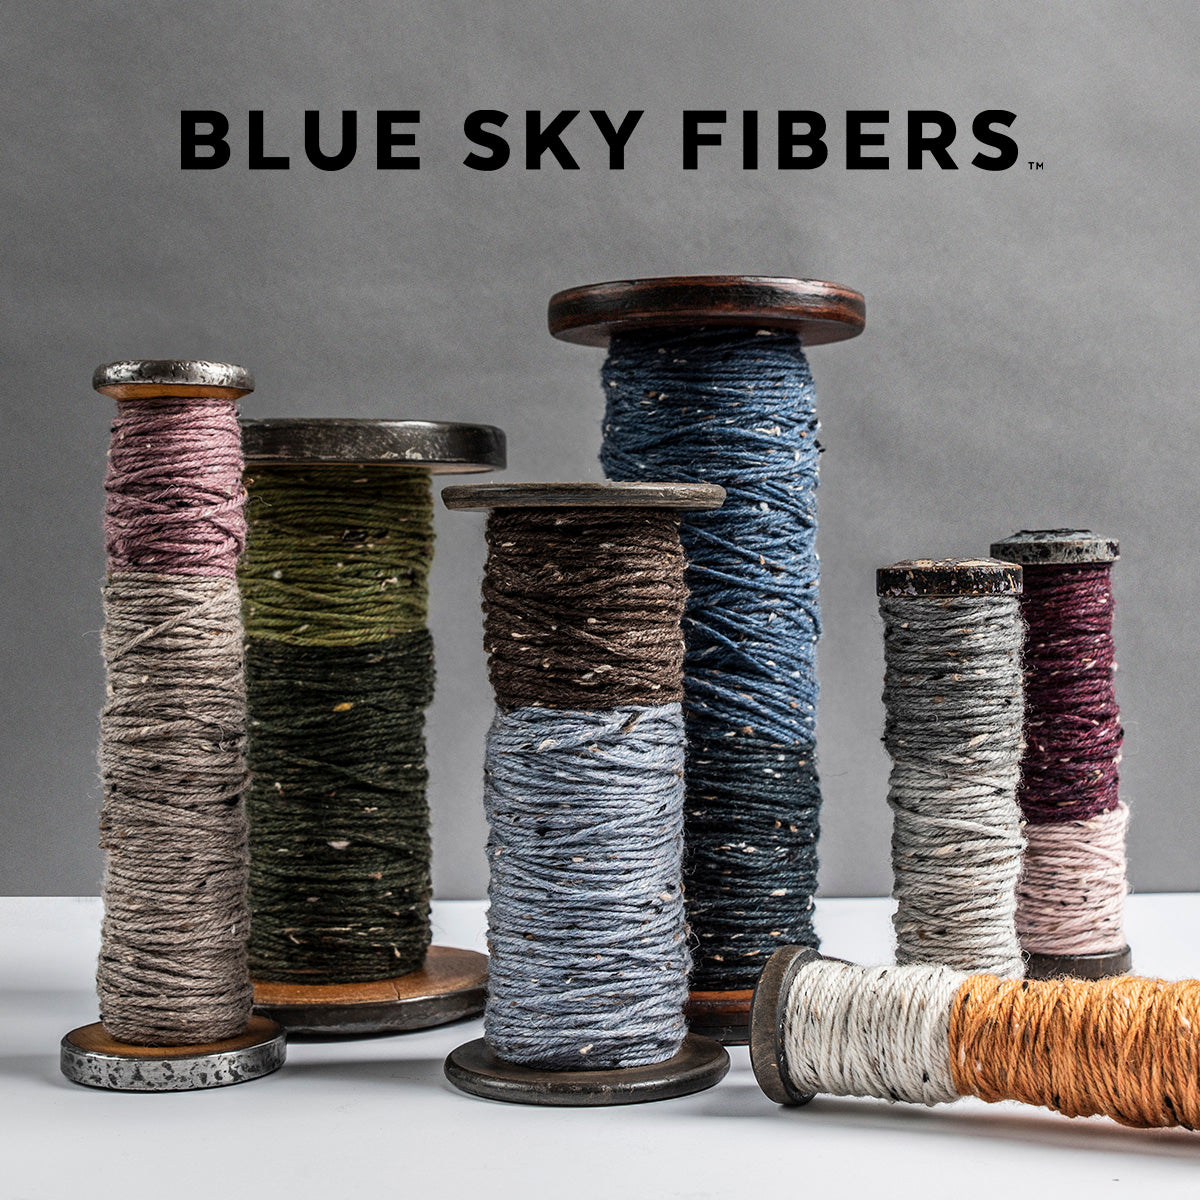 Woolstok Tweed Blue Sky Fibers